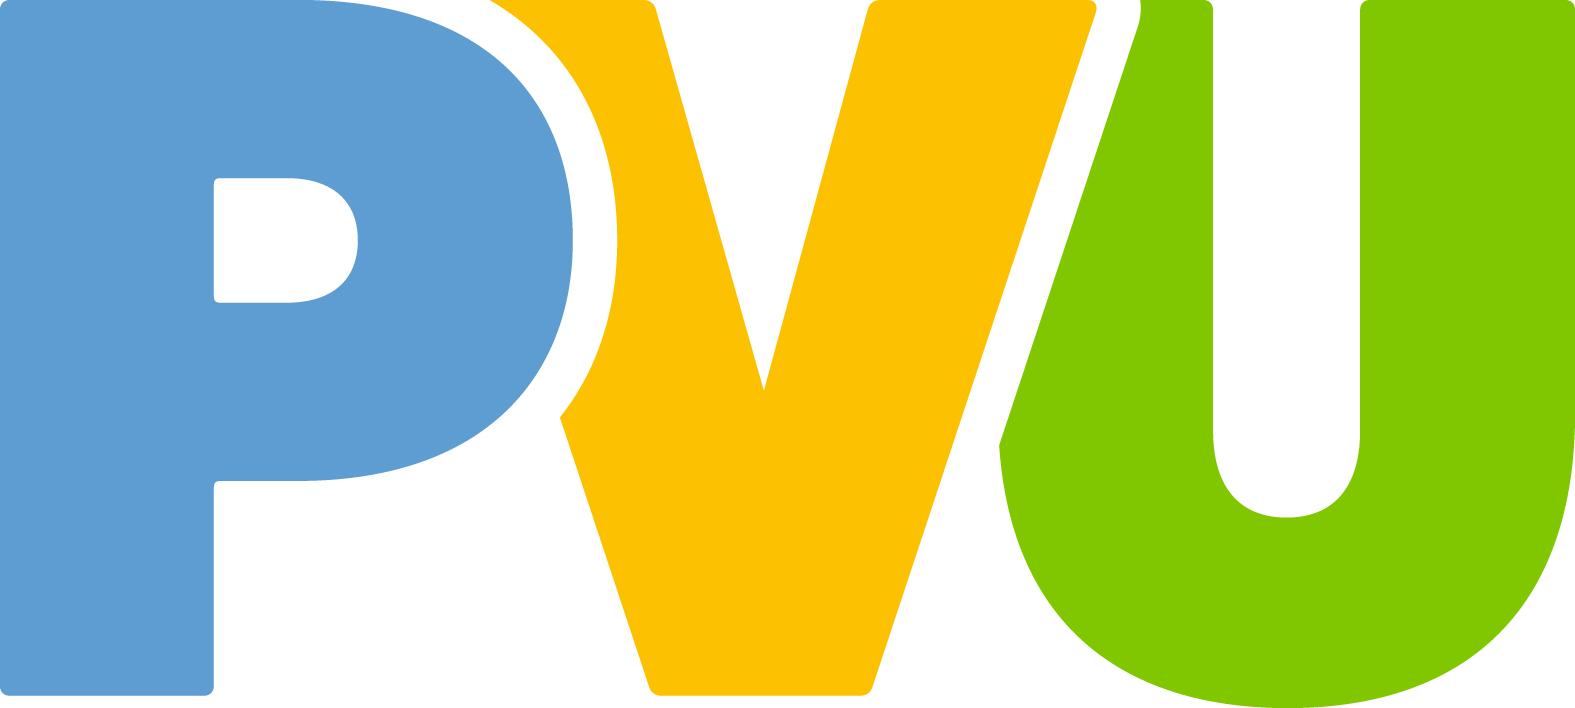 Logo PVU Perleberg